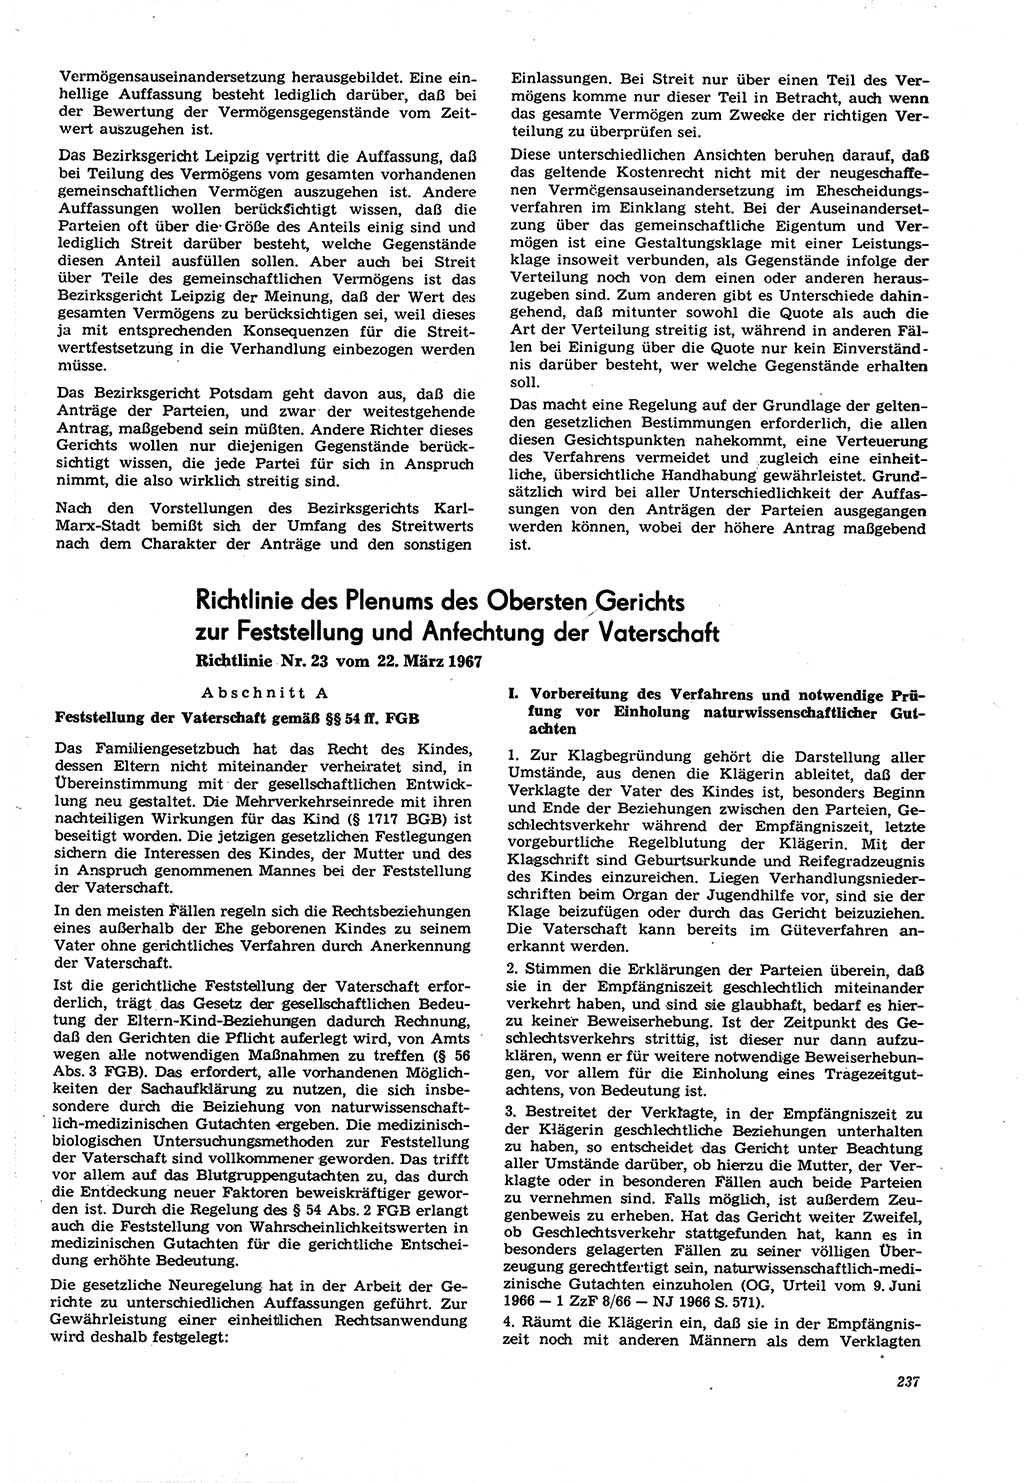 Neue Justiz (NJ), Zeitschrift für Recht und Rechtswissenschaft [Deutsche Demokratische Republik (DDR)], 21. Jahrgang 1967, Seite 237 (NJ DDR 1967, S. 237)